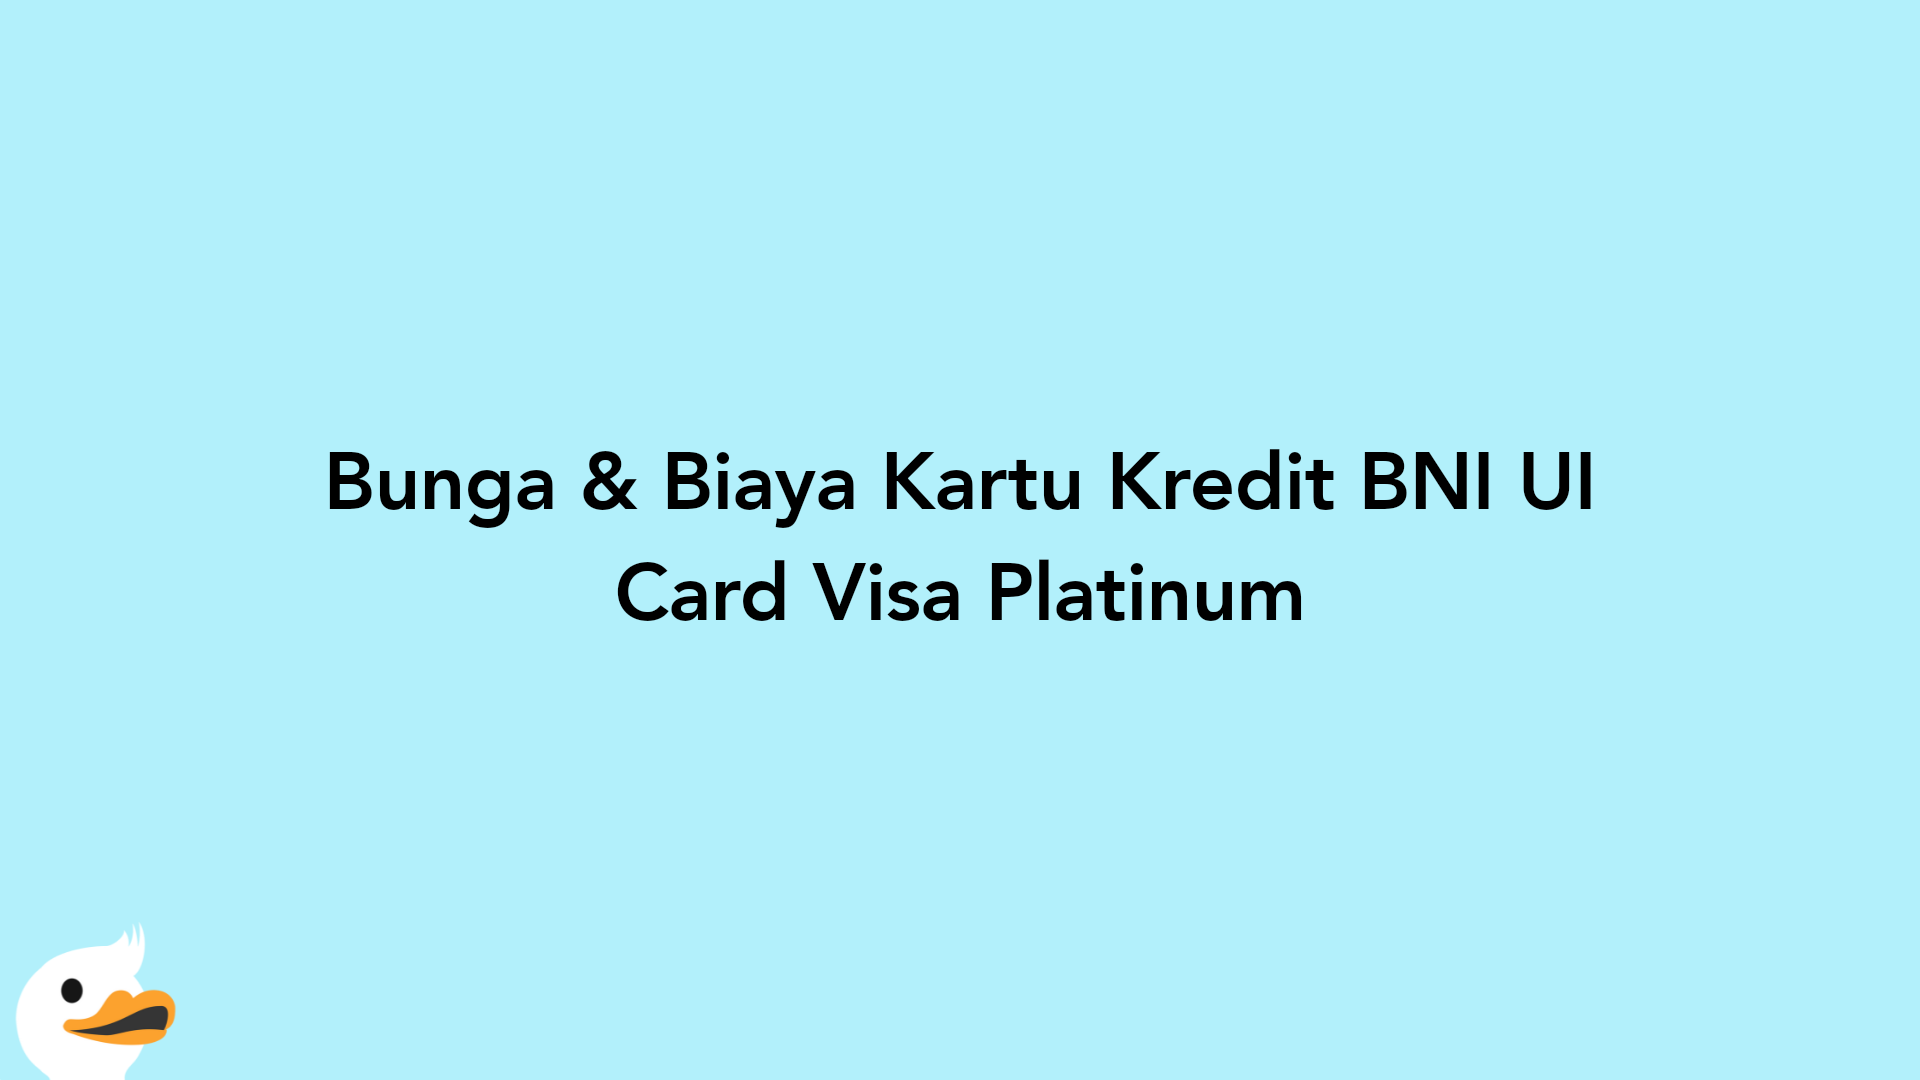 Bunga & Biaya Kartu Kredit BNI UI Card Visa Platinum